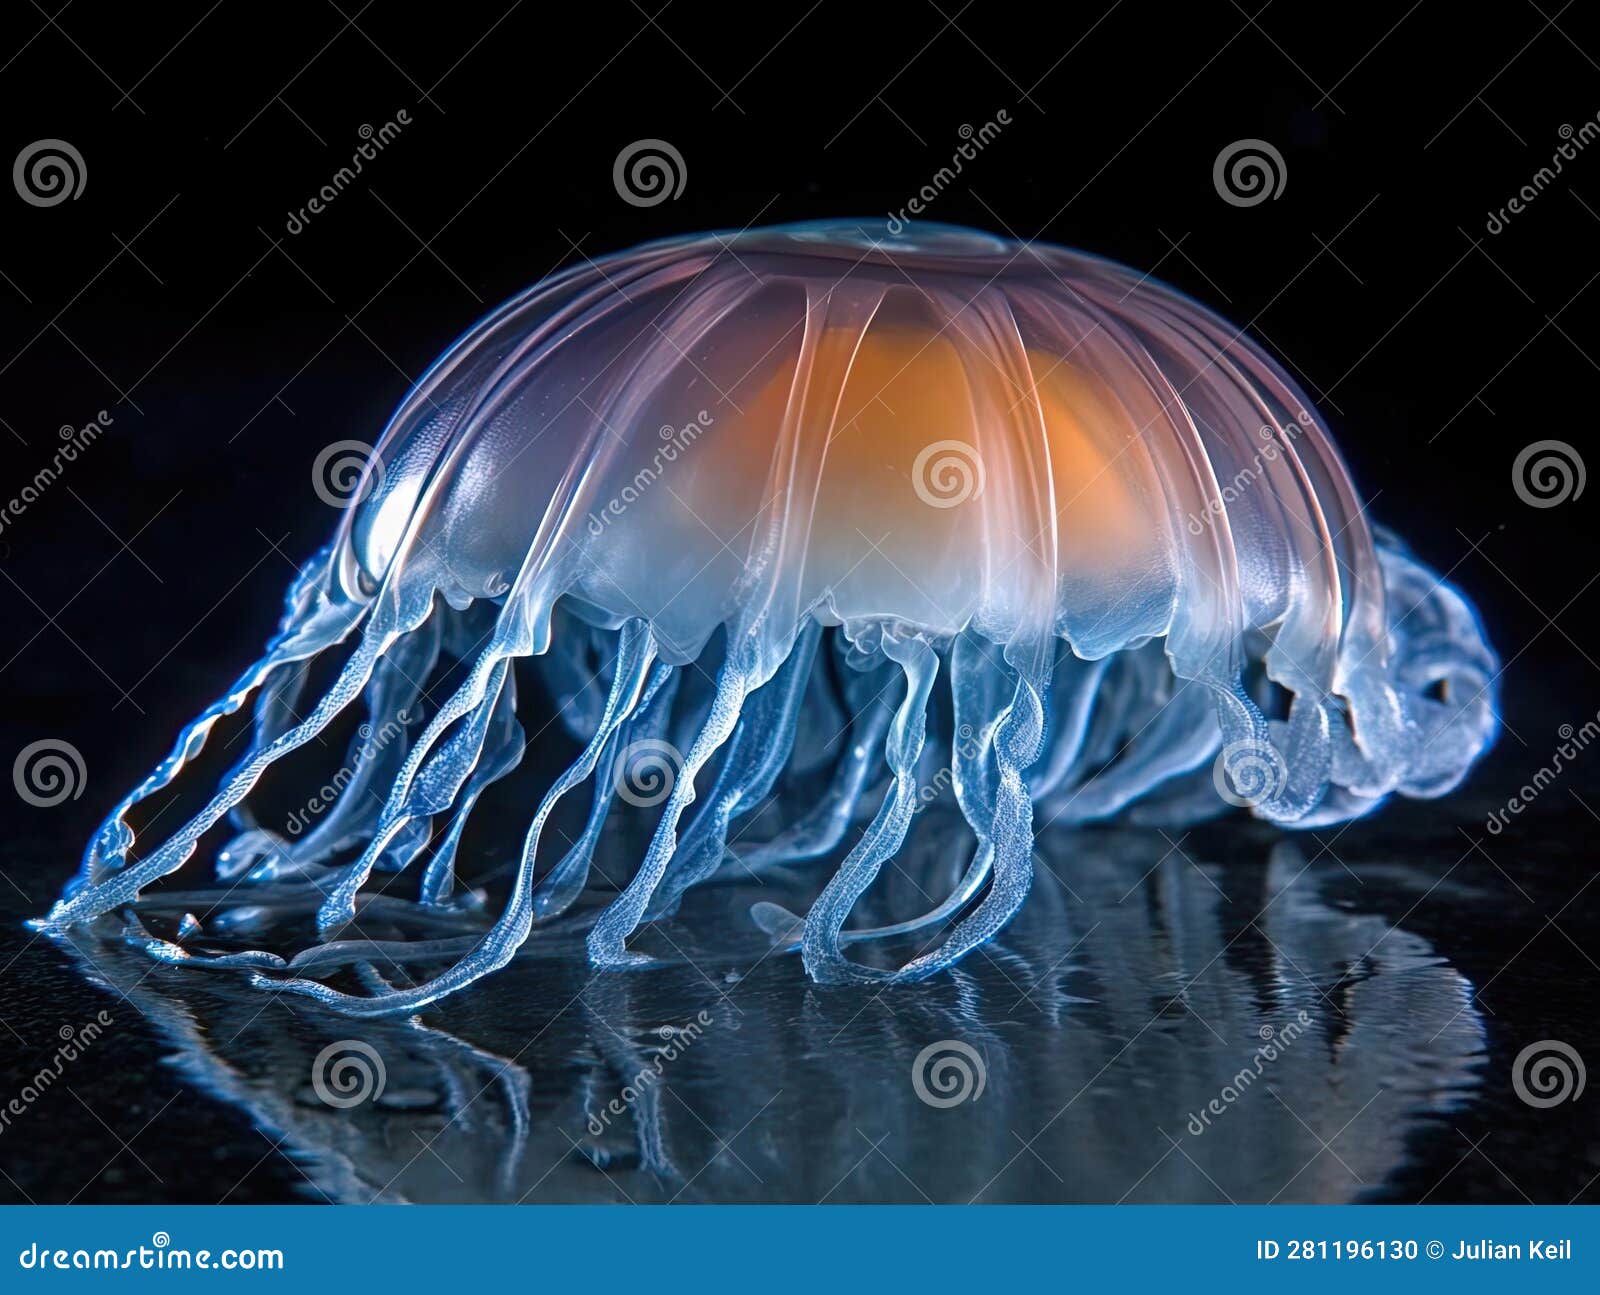 glowing jellyfish in dark void